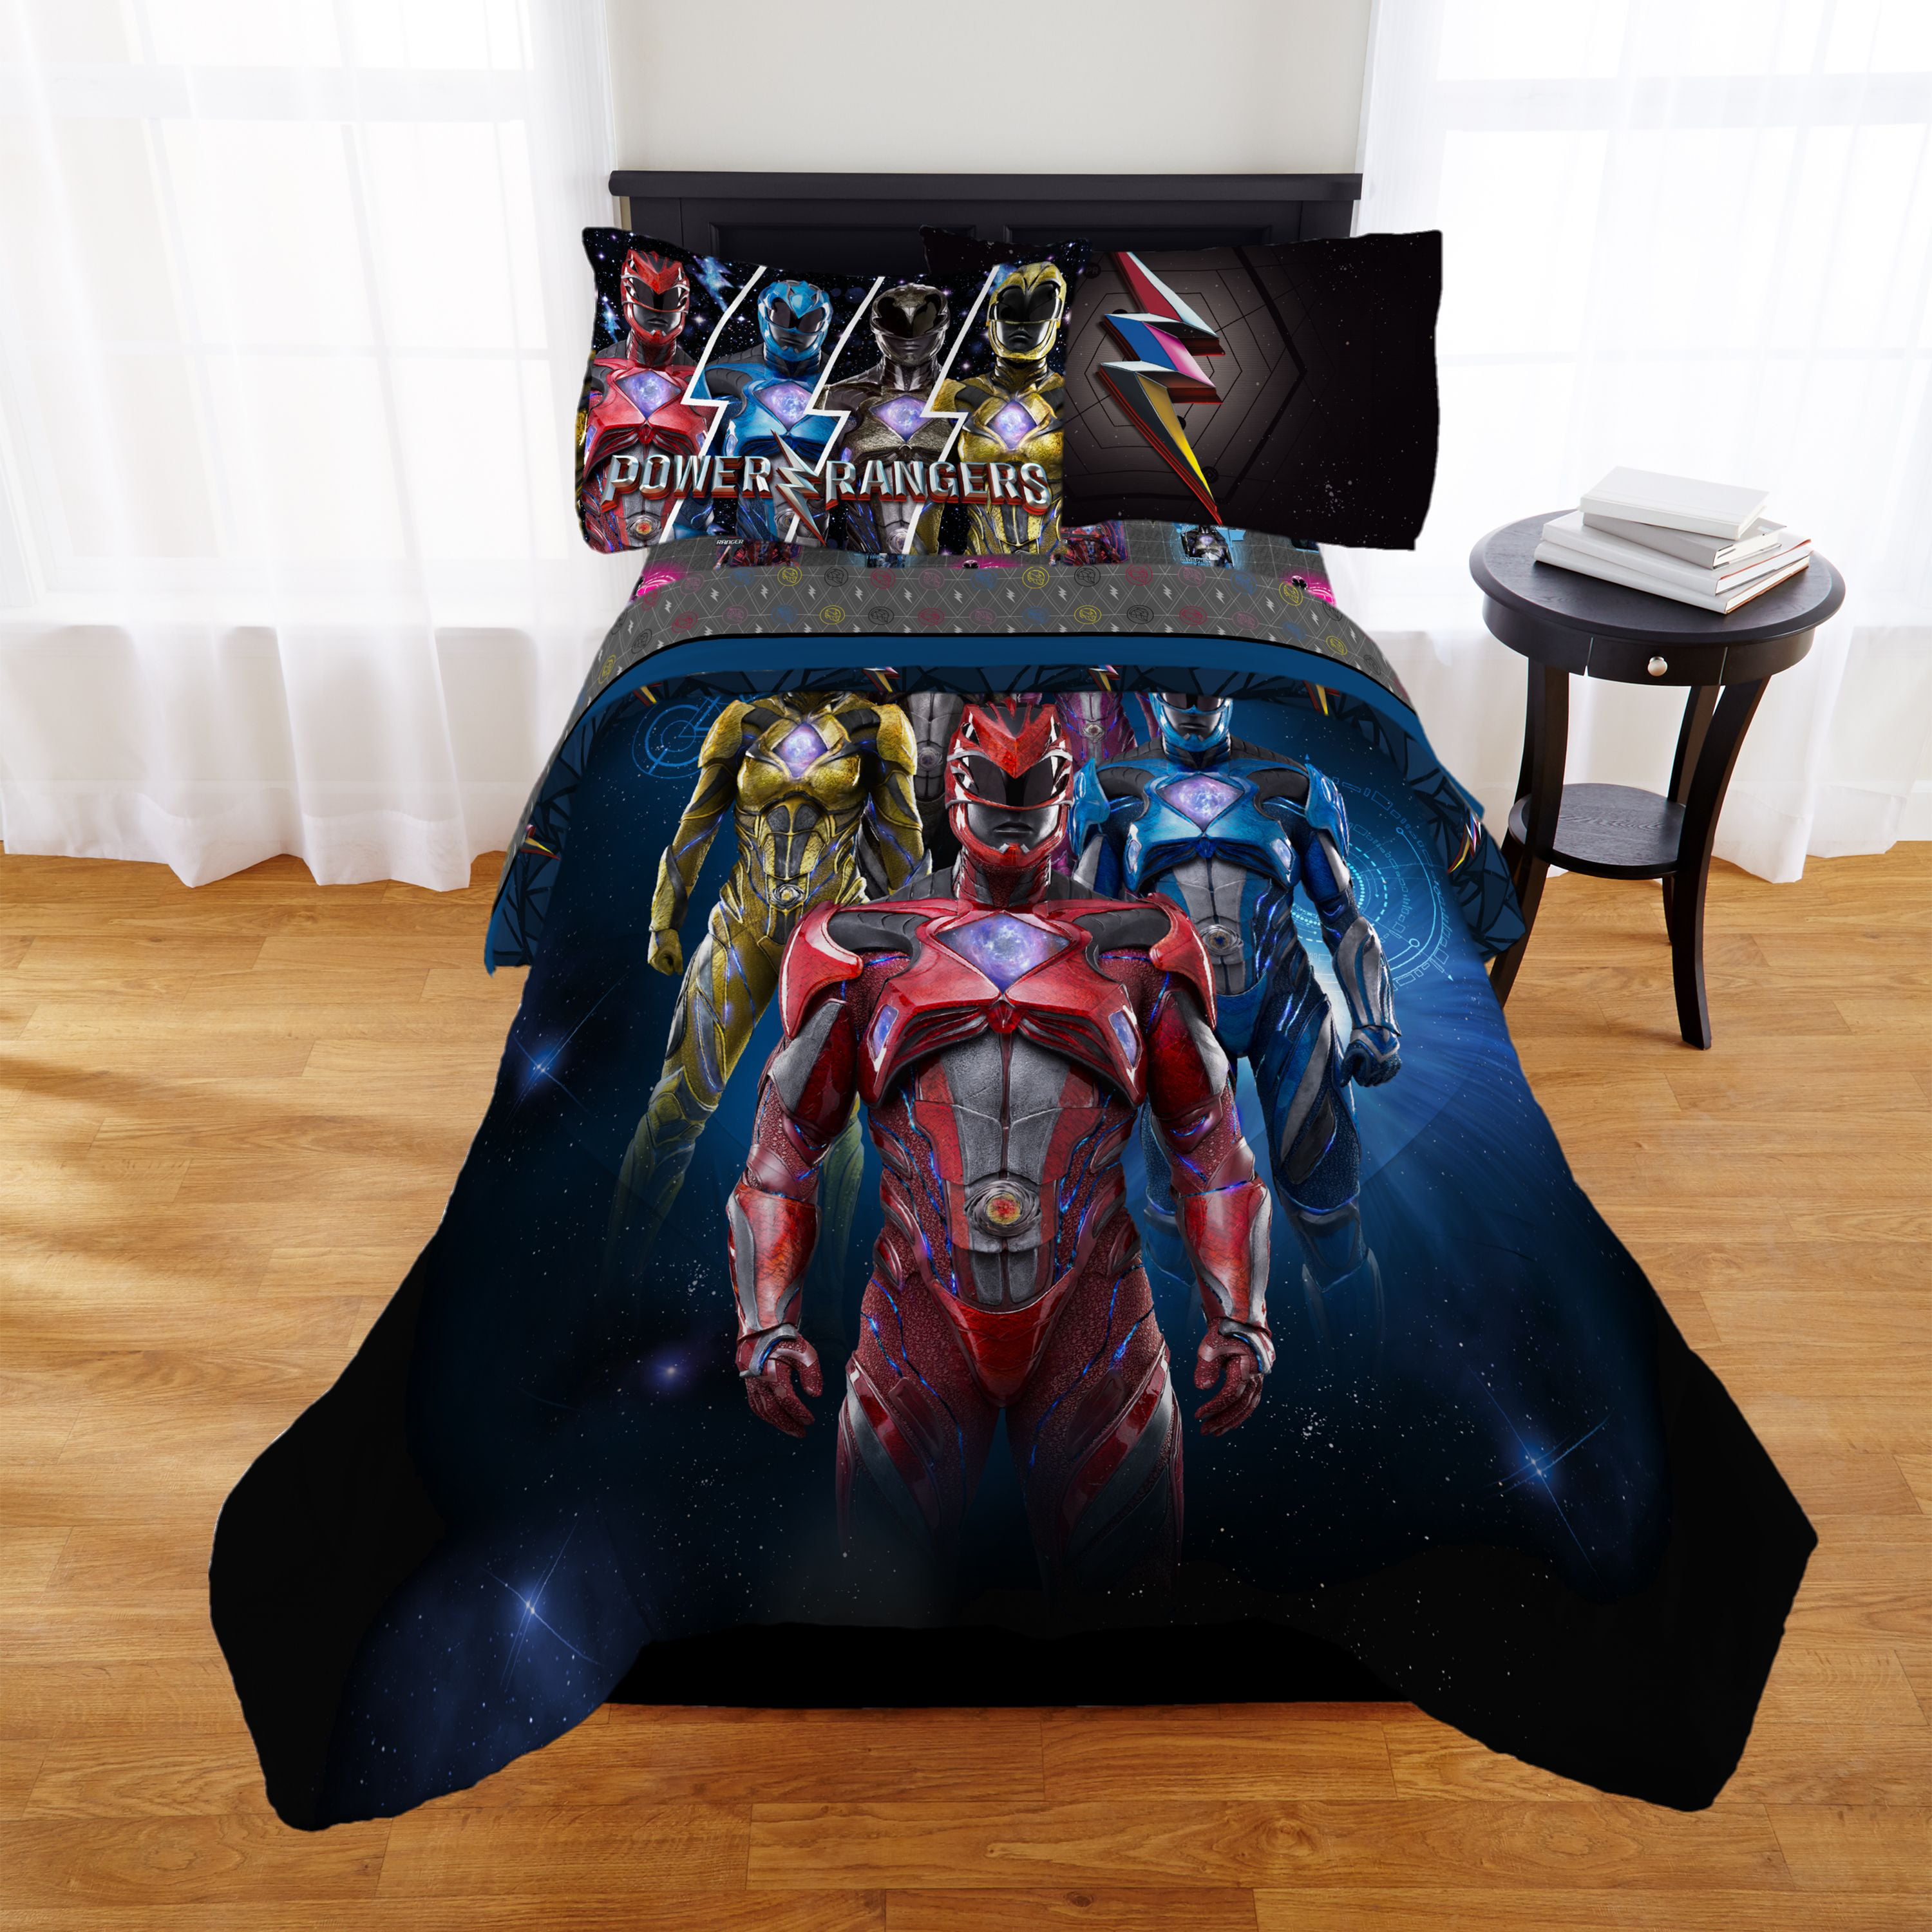 Rangers Ninja Steel Comforter Twin, Power Ranger Twin Bed Set